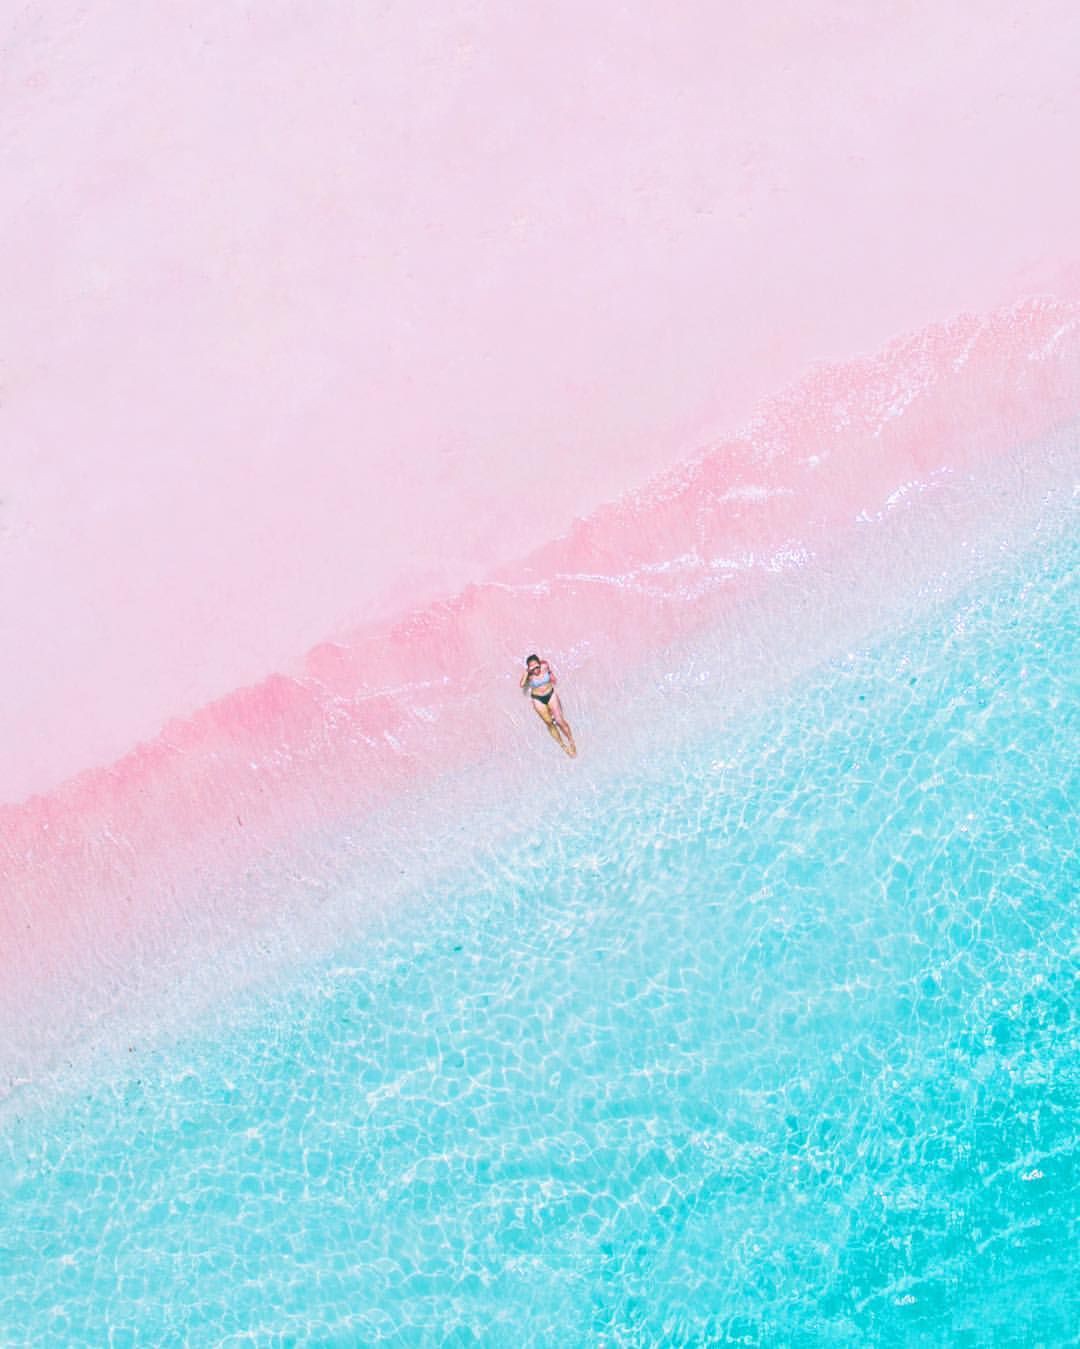 Bãi biển cát màu hồng là điểm đến hot nhất hiện nay. Với những đường cong mềm mại của bãi biển và màu hồng nhẹ nhàng, bạn sẽ cảm nhận được sự yên bình và thư thái. Hãy đến và tận hưởng khoảnh khắc tuyệt vời tại bãi biển cát màu hồng. Đừng quên chụp lại những khoảnh khắc tuyệt vời và cập nhật cho mình những bức ảnh màu hồng đầy thú vị.